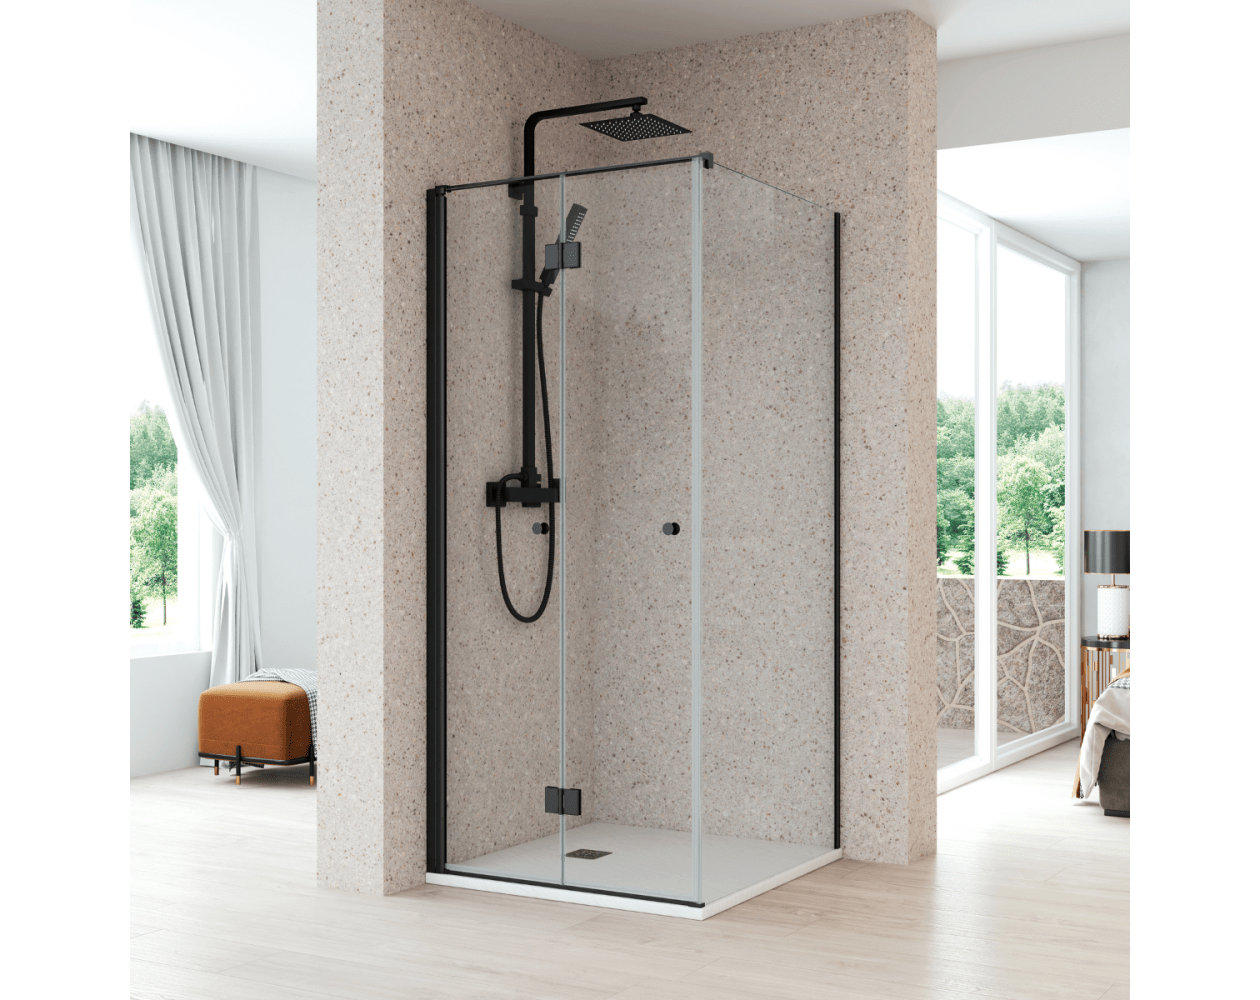 Organizador ducha aluminio negro - Orden en casa